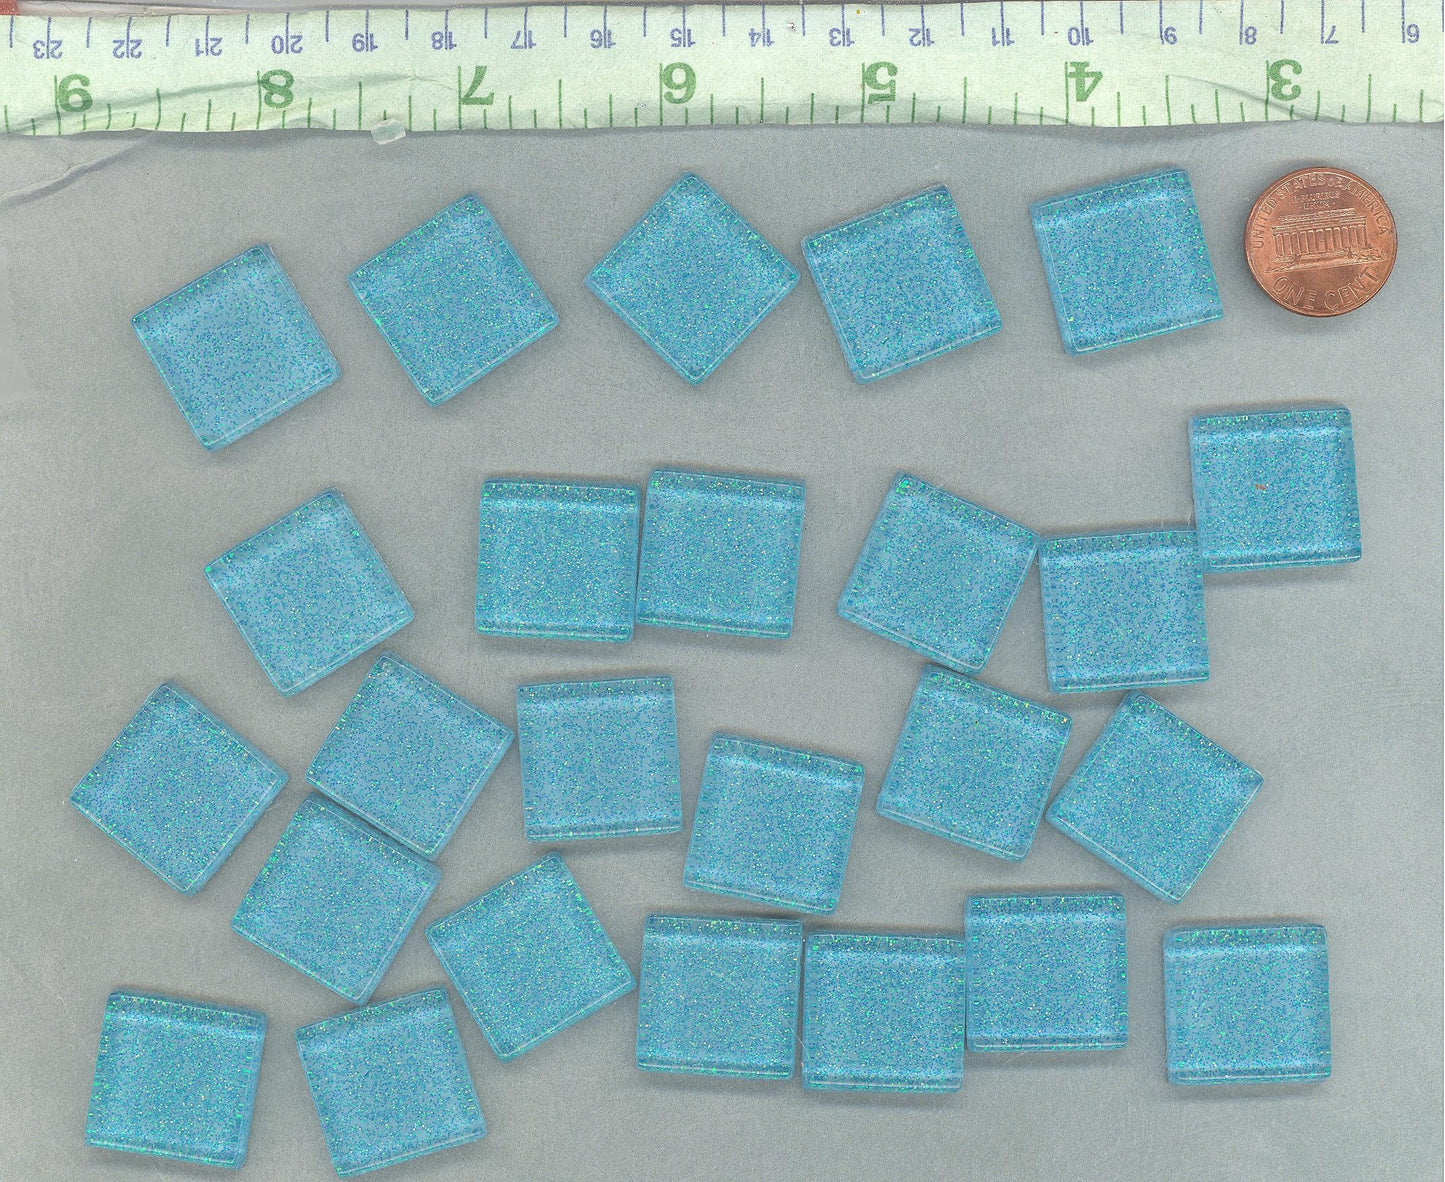 Poolside Blue Glitter Tiles - 20mm Mosaic Tiles - 25 Metallic Glass Tiles